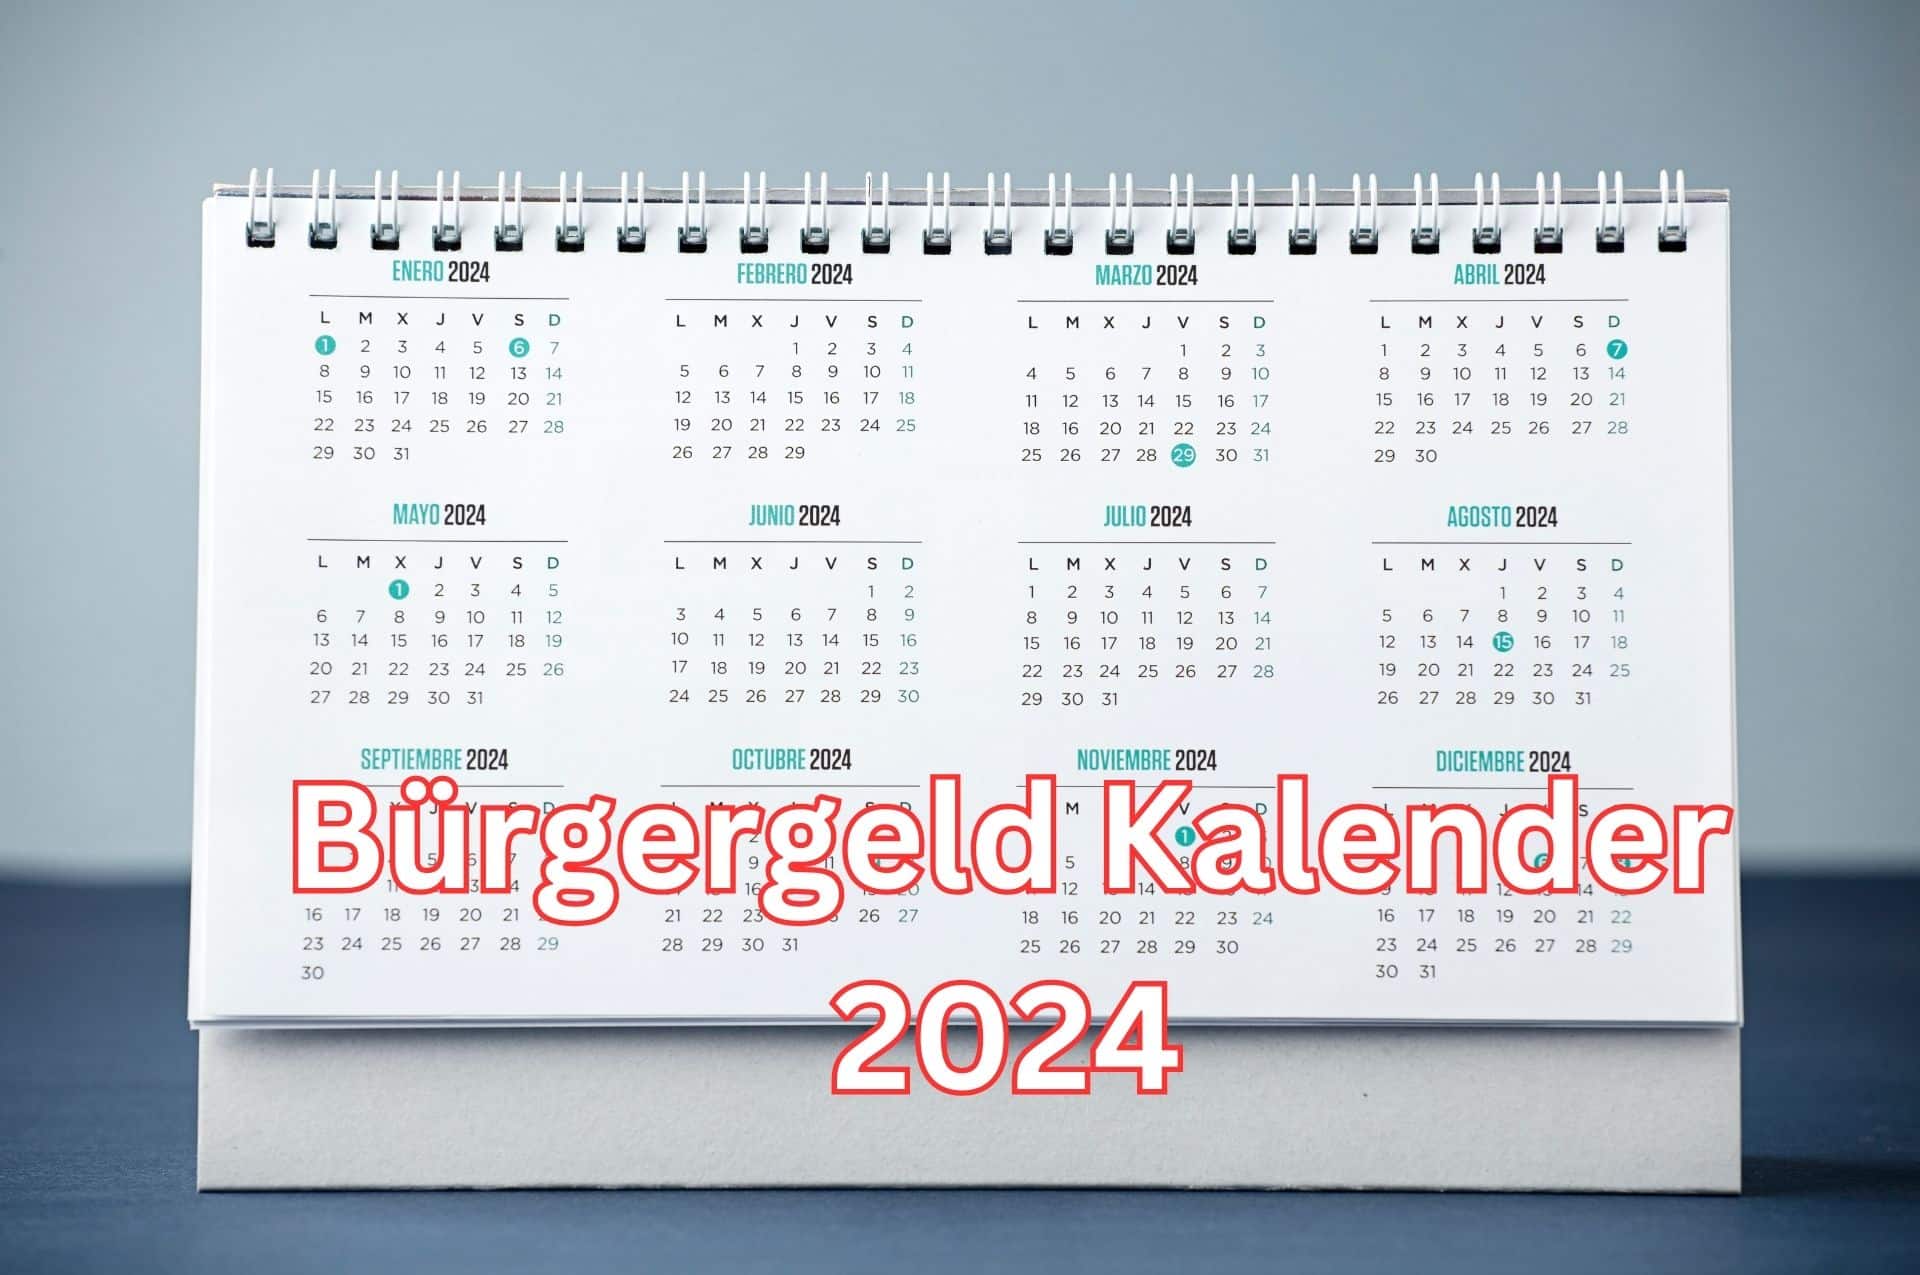 Bürgergeld Kalender 2024 mit allen wichtigen Terminen und Fristen für das neue Jahr